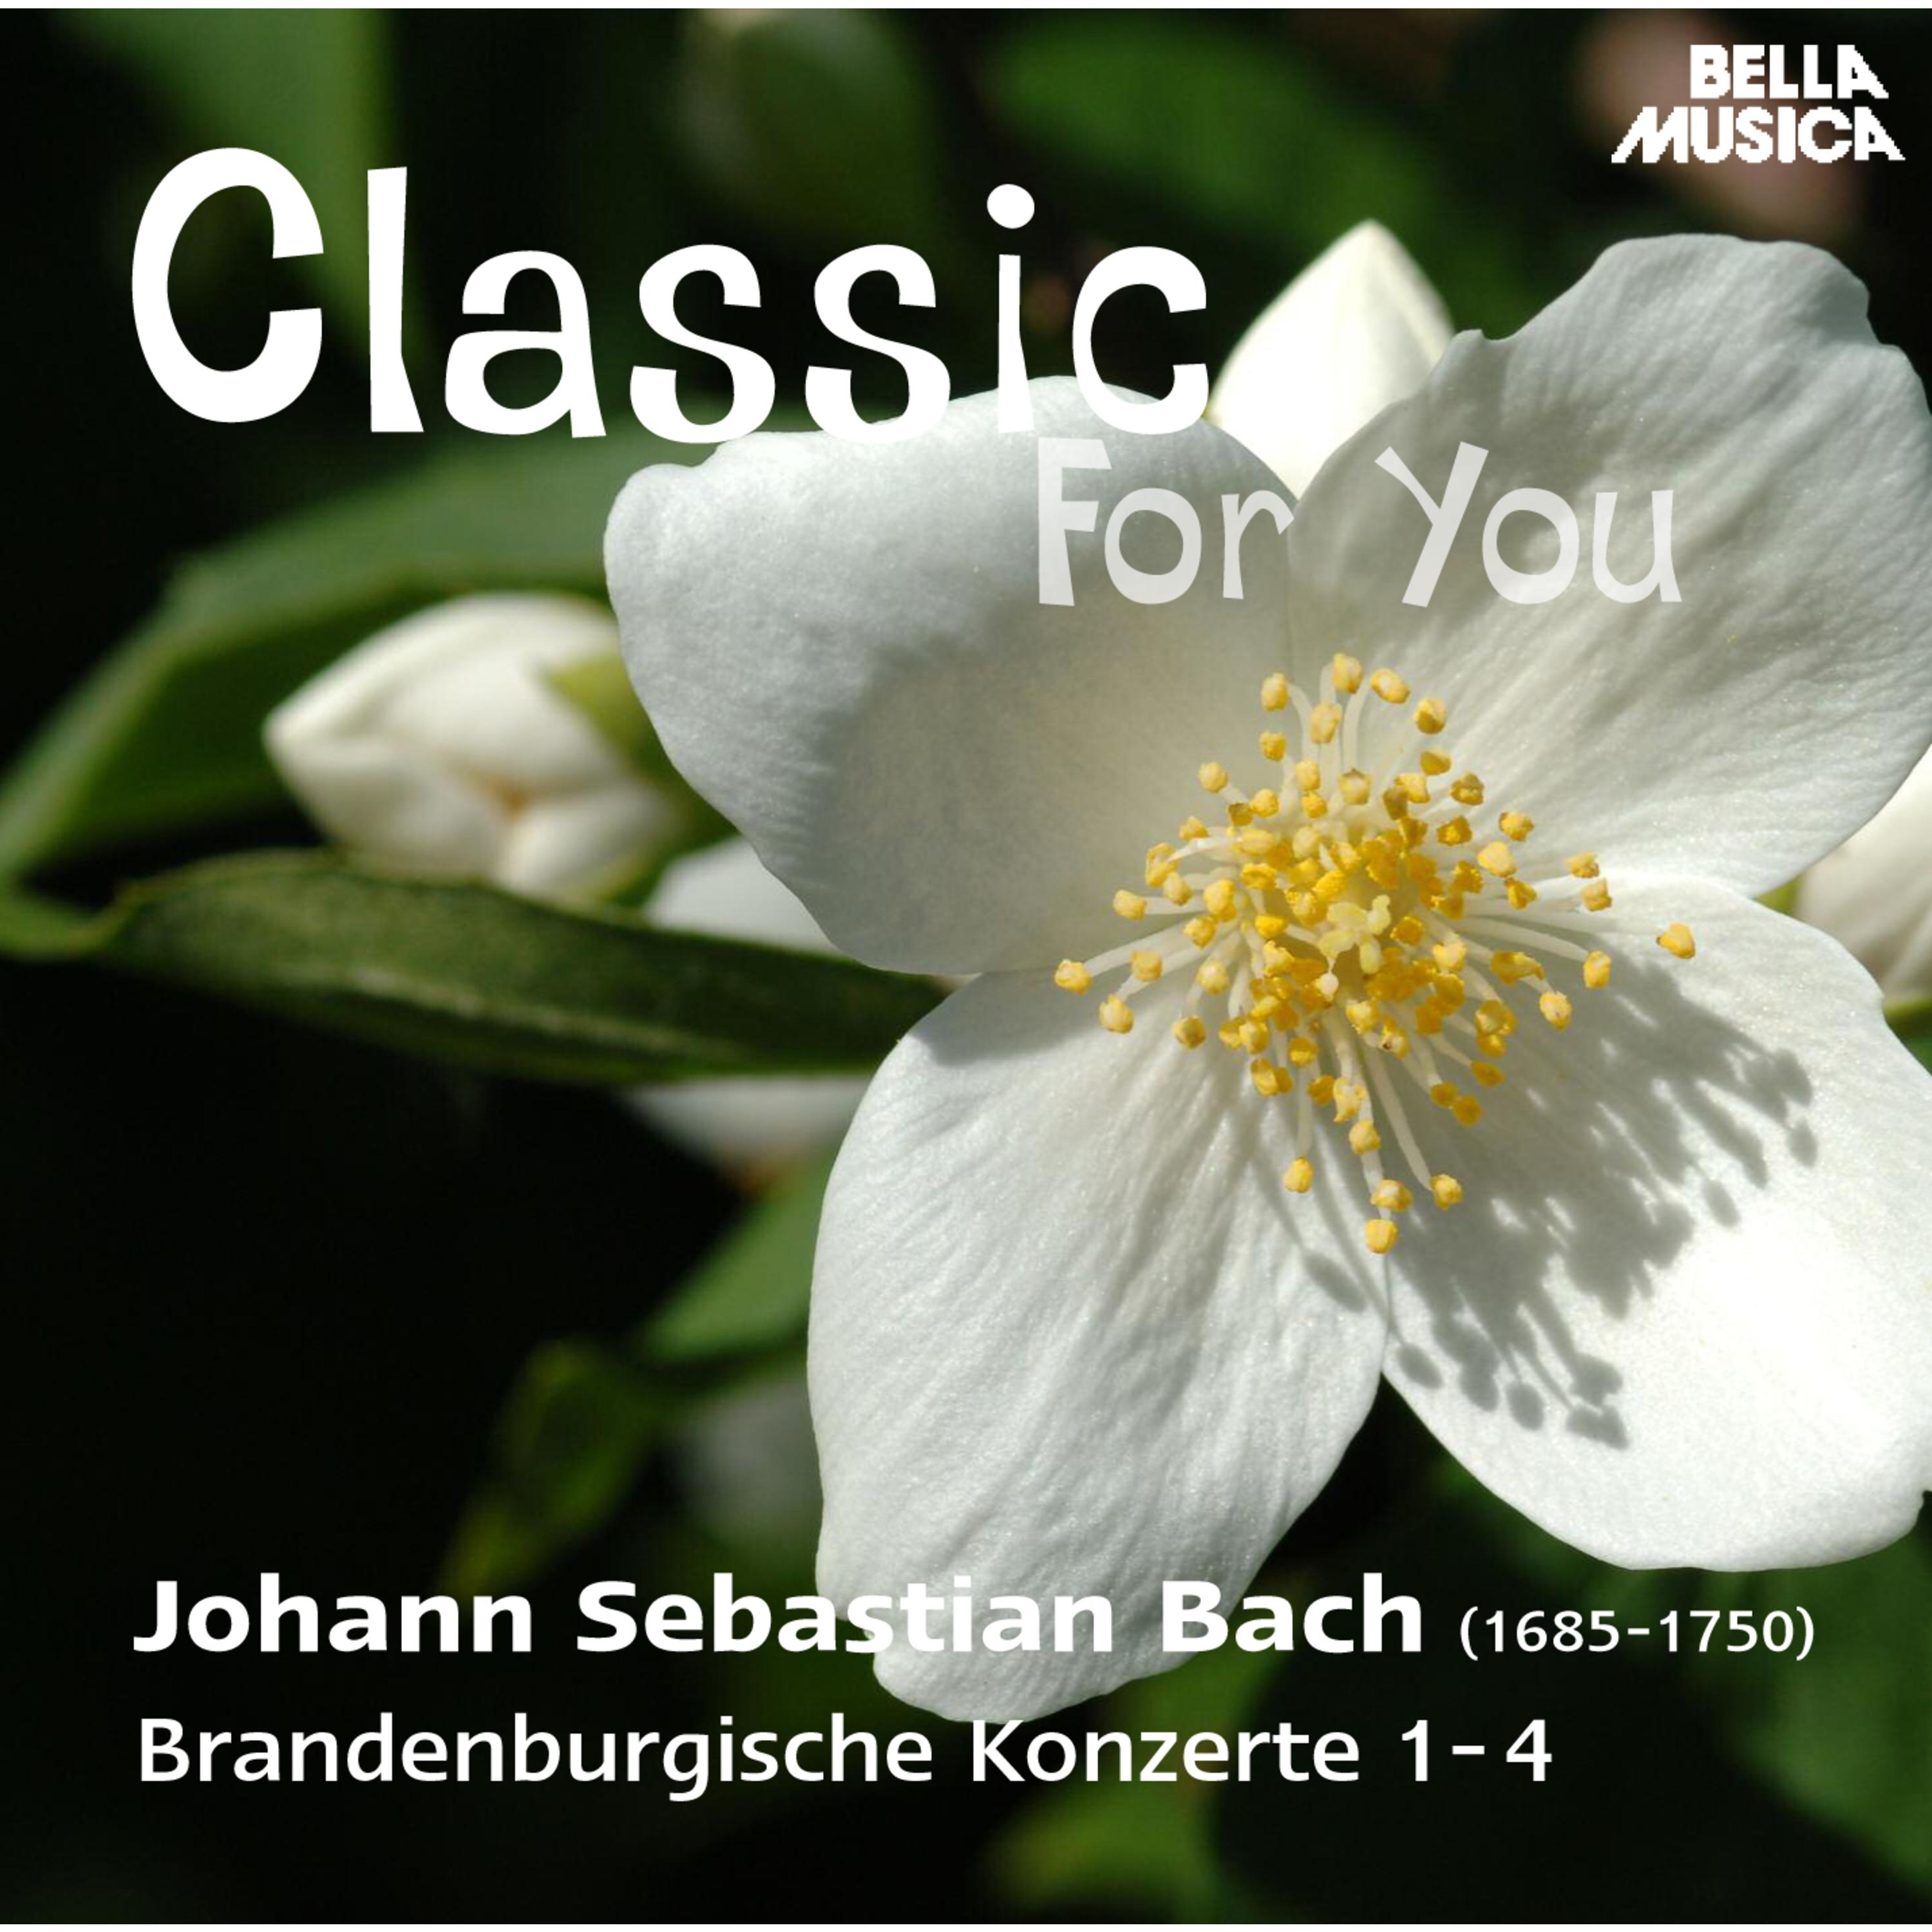 Brandenburgisches Konzert in G Major, BWV 1049, No. 4: III. Presto